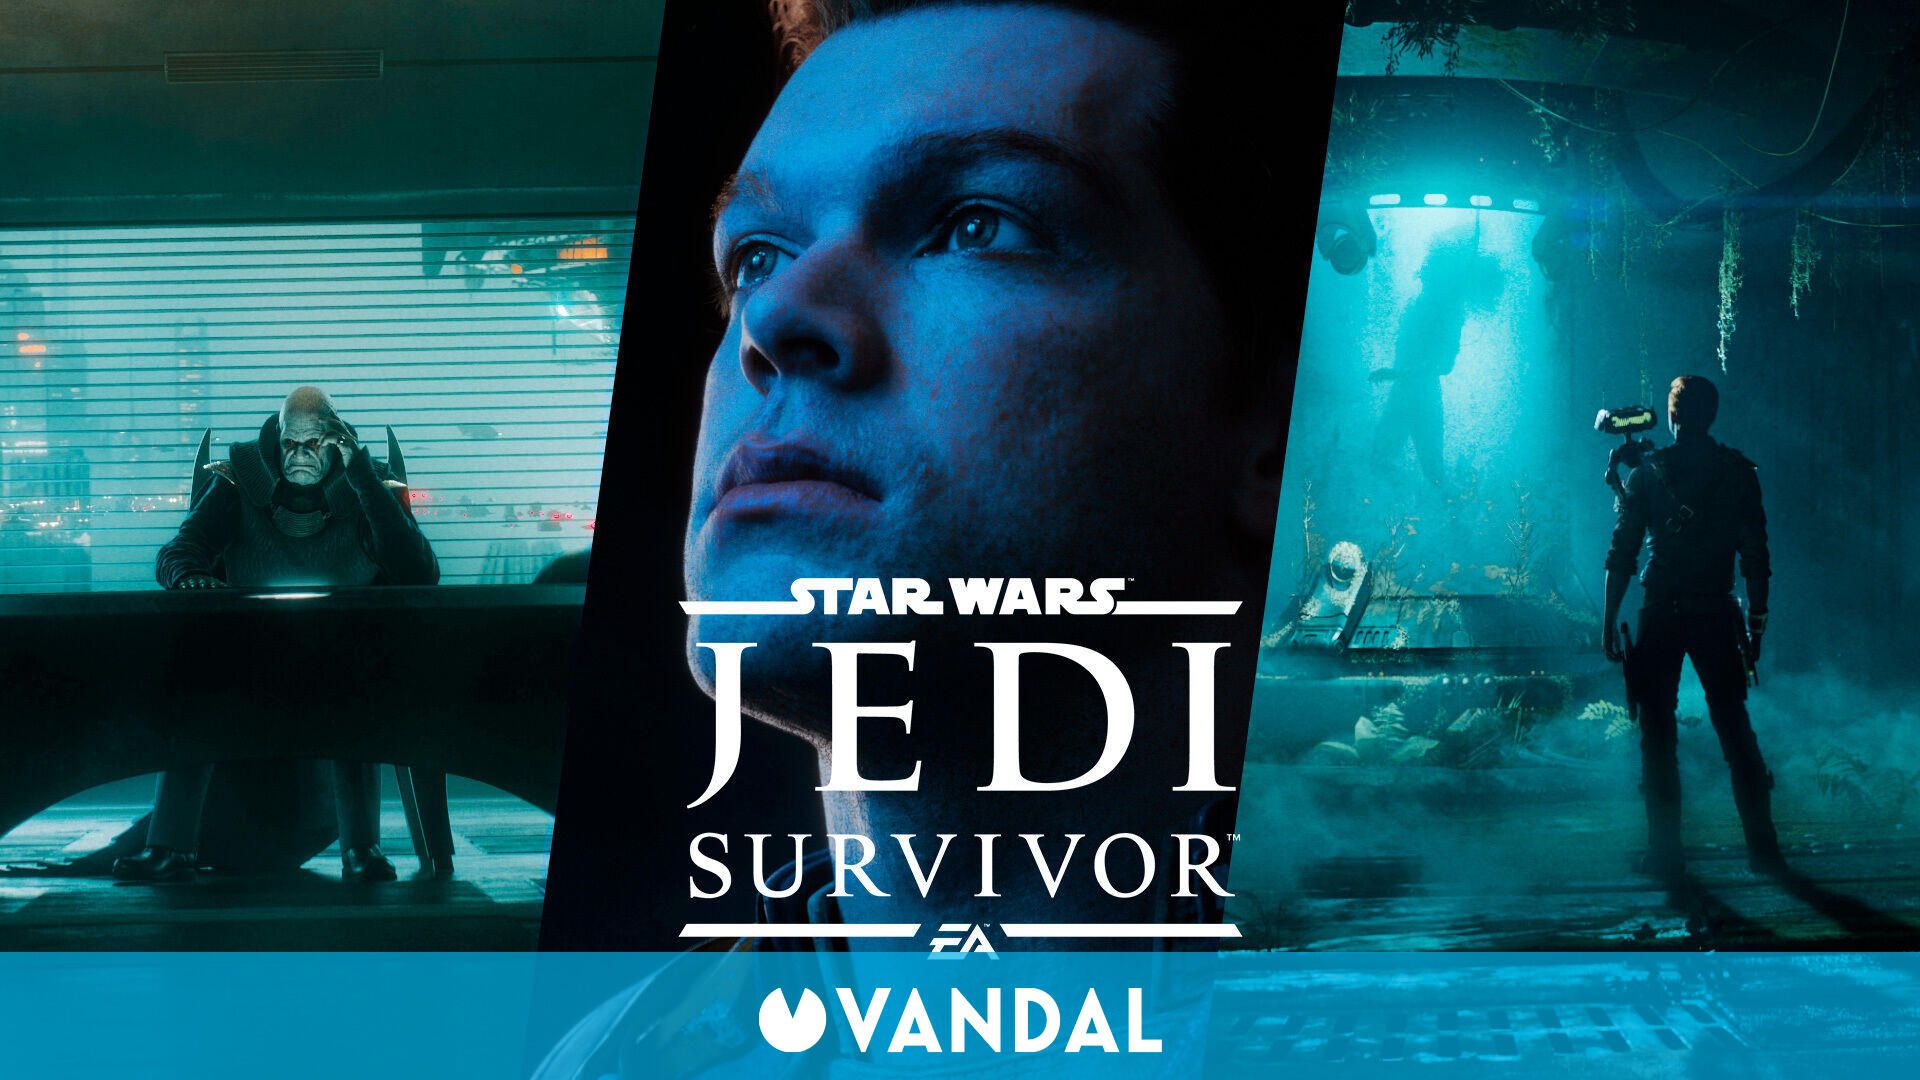 Patrocinar Compra Cuestiones diplomáticas Star Wars Jedi: Survivor tendrá un tono más oscuro que Fallen Order - Vandal